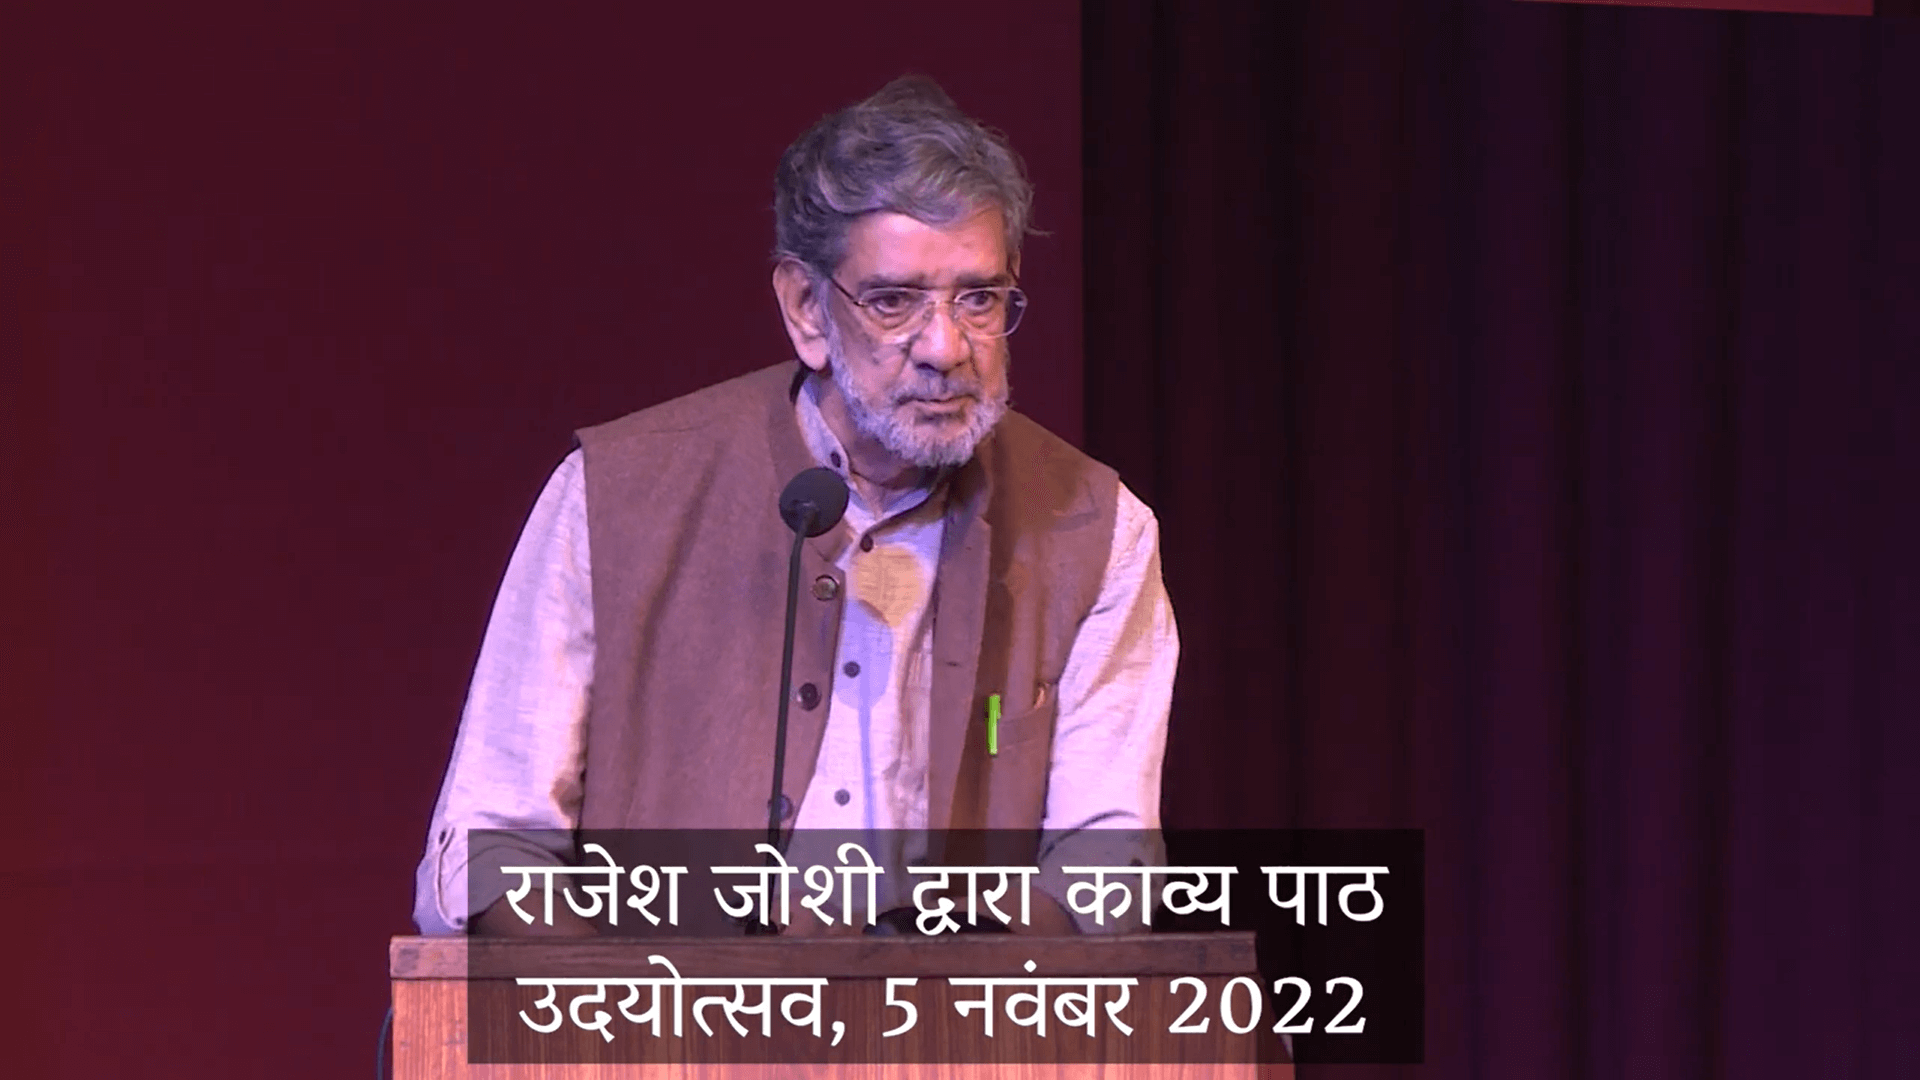  कविता | ‘इत्यादि’ | राजेश जोशी | उदयोत्सव 2022